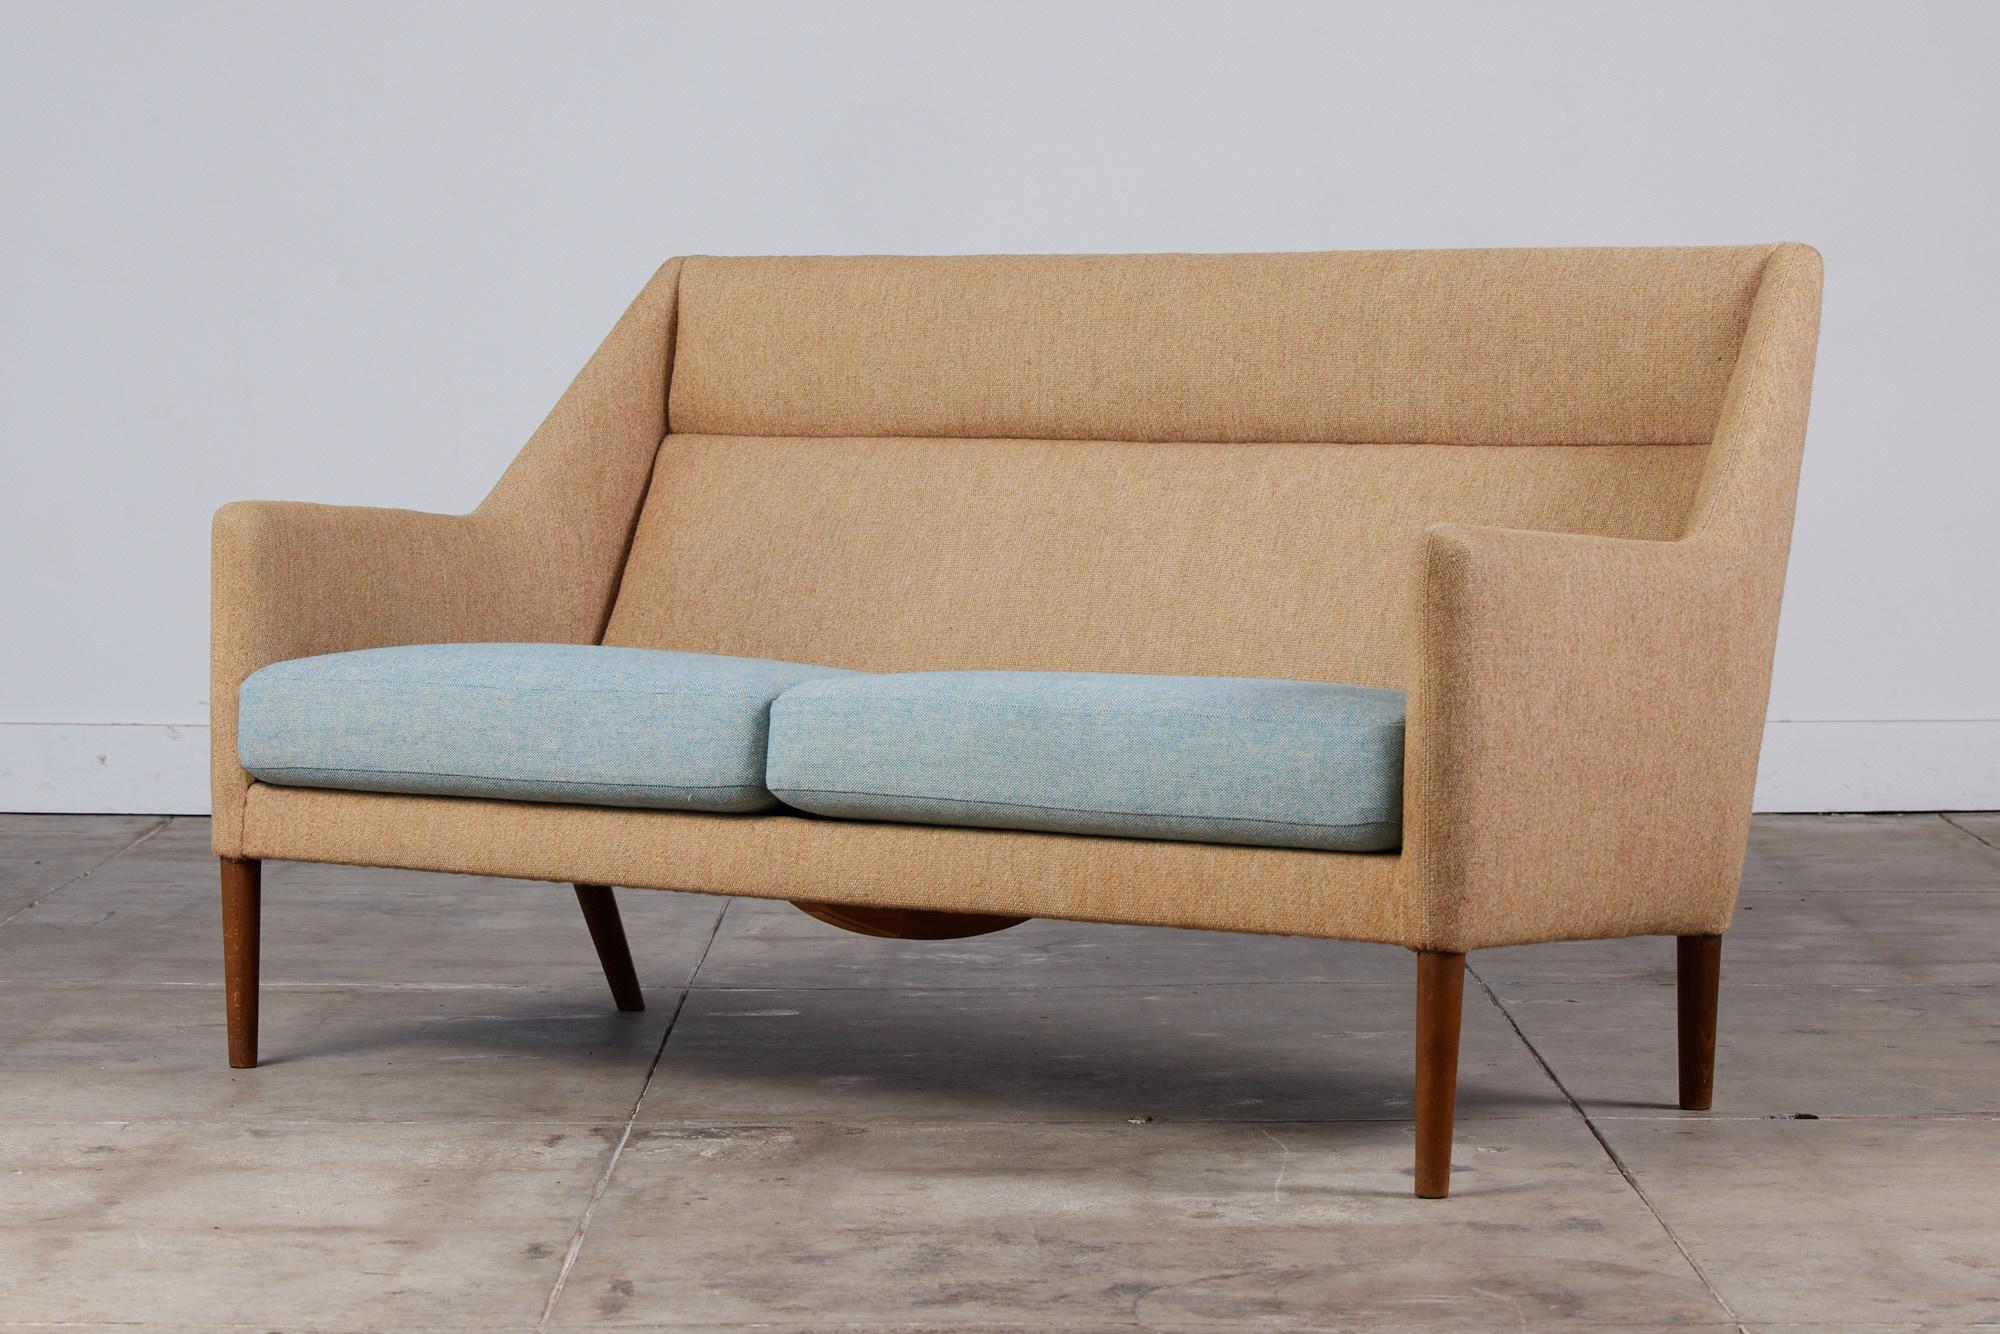 Un généreux canapé à deux places conçu par Ejner Larsen & Axel Bender Madsen pour Fritz Hansen vers les années 1950, Danemark. Le canapé donne l'impression d'être un fauteuil à oreilles allongé avec ses accoudoirs hauts. Le canapé 